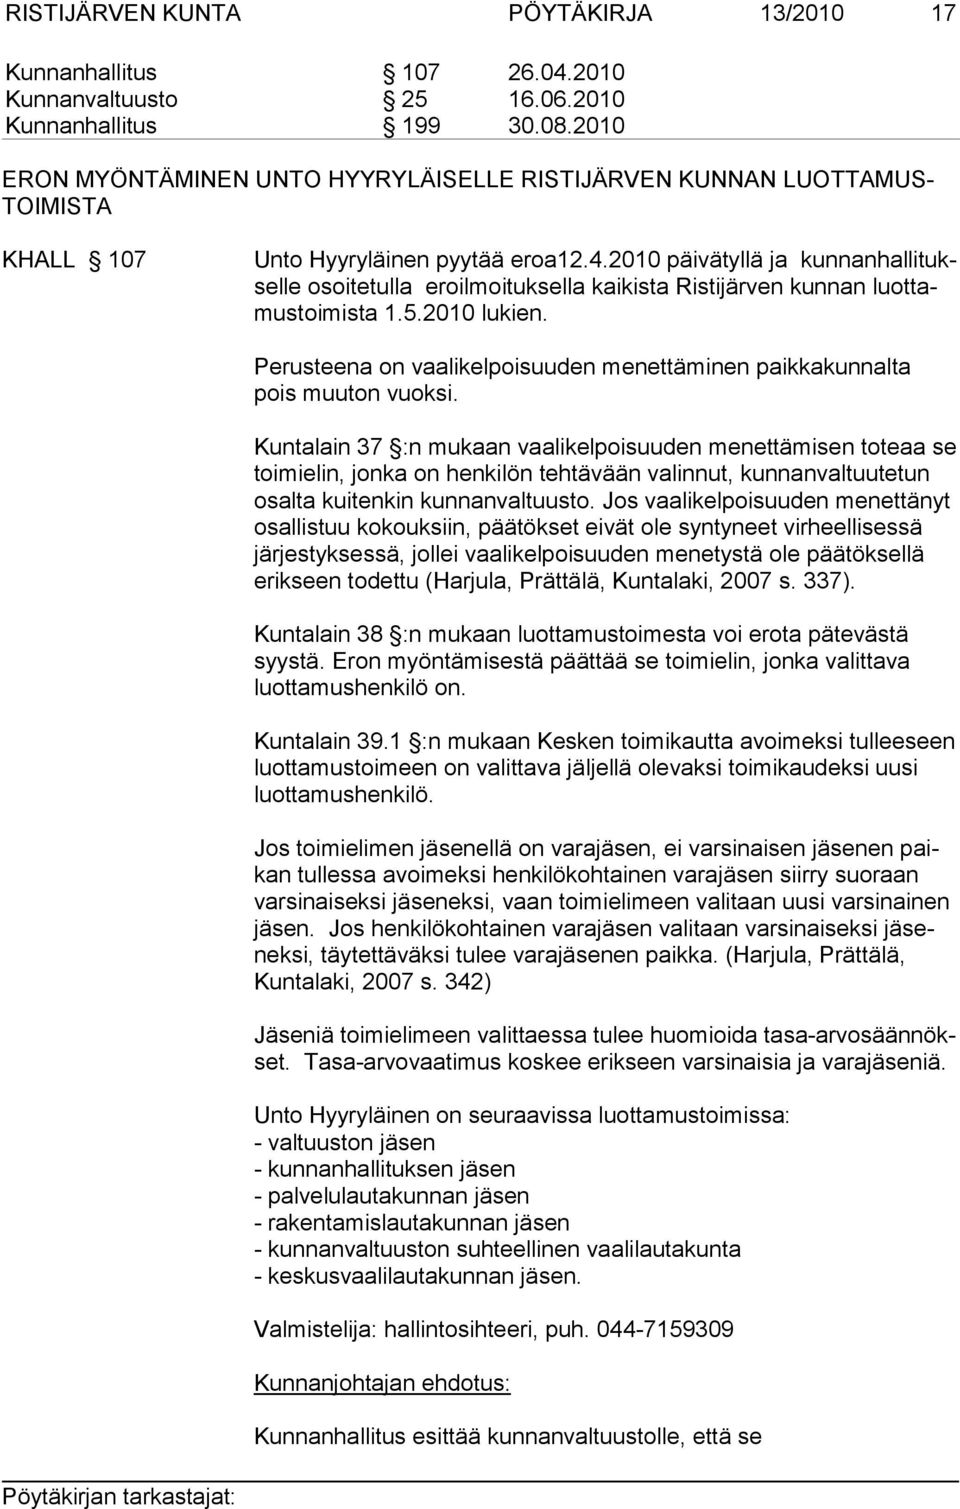 2010 päivätyllä ja kunnanhallituksel le osoitetulla eroilmoituksella kaikista Ristijärven kunnan luottamus toi mis ta 1.5.2010 lukien.